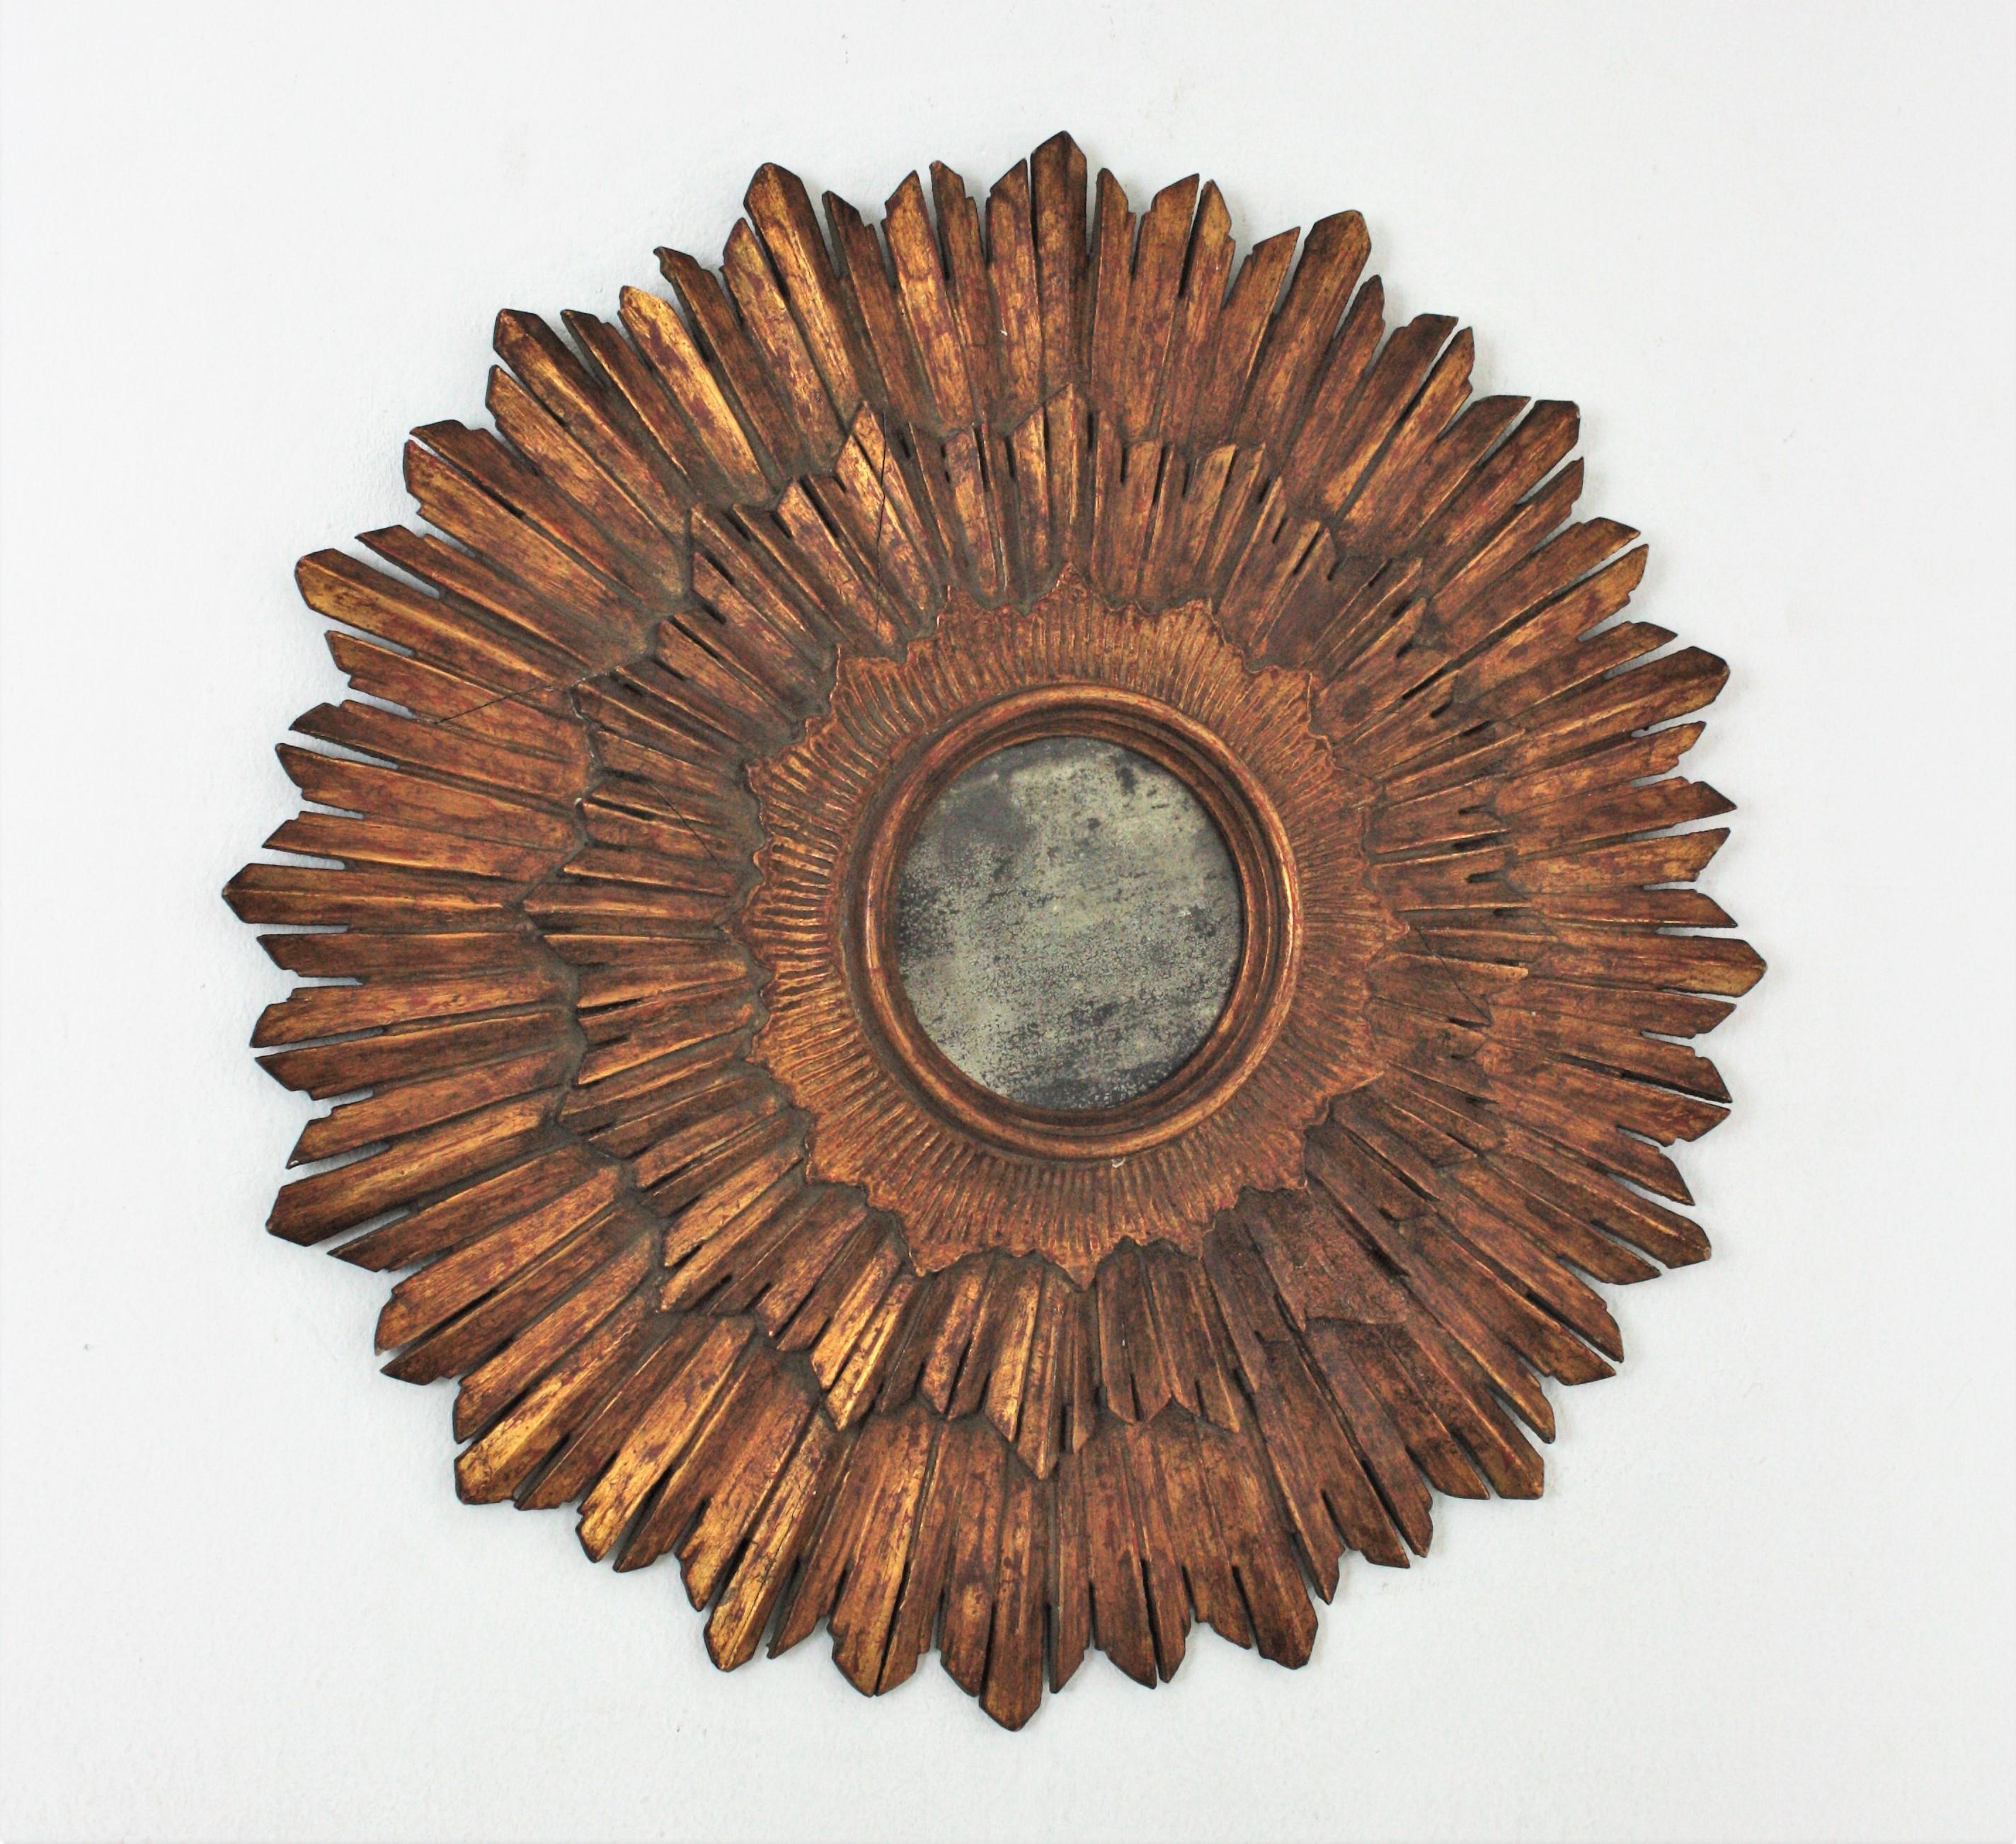 Dreischichtiger geschnitzter Holzspiegel mit Sonnenschliff, Spanien, 1930er Jahre.
Die drei Strahlenschichten, die das zentrale runde Glas umgeben, unterstreichen seine Schönheit. 
Dieser Wandspiegel hat eine tolle, gealterte Patina, die seine